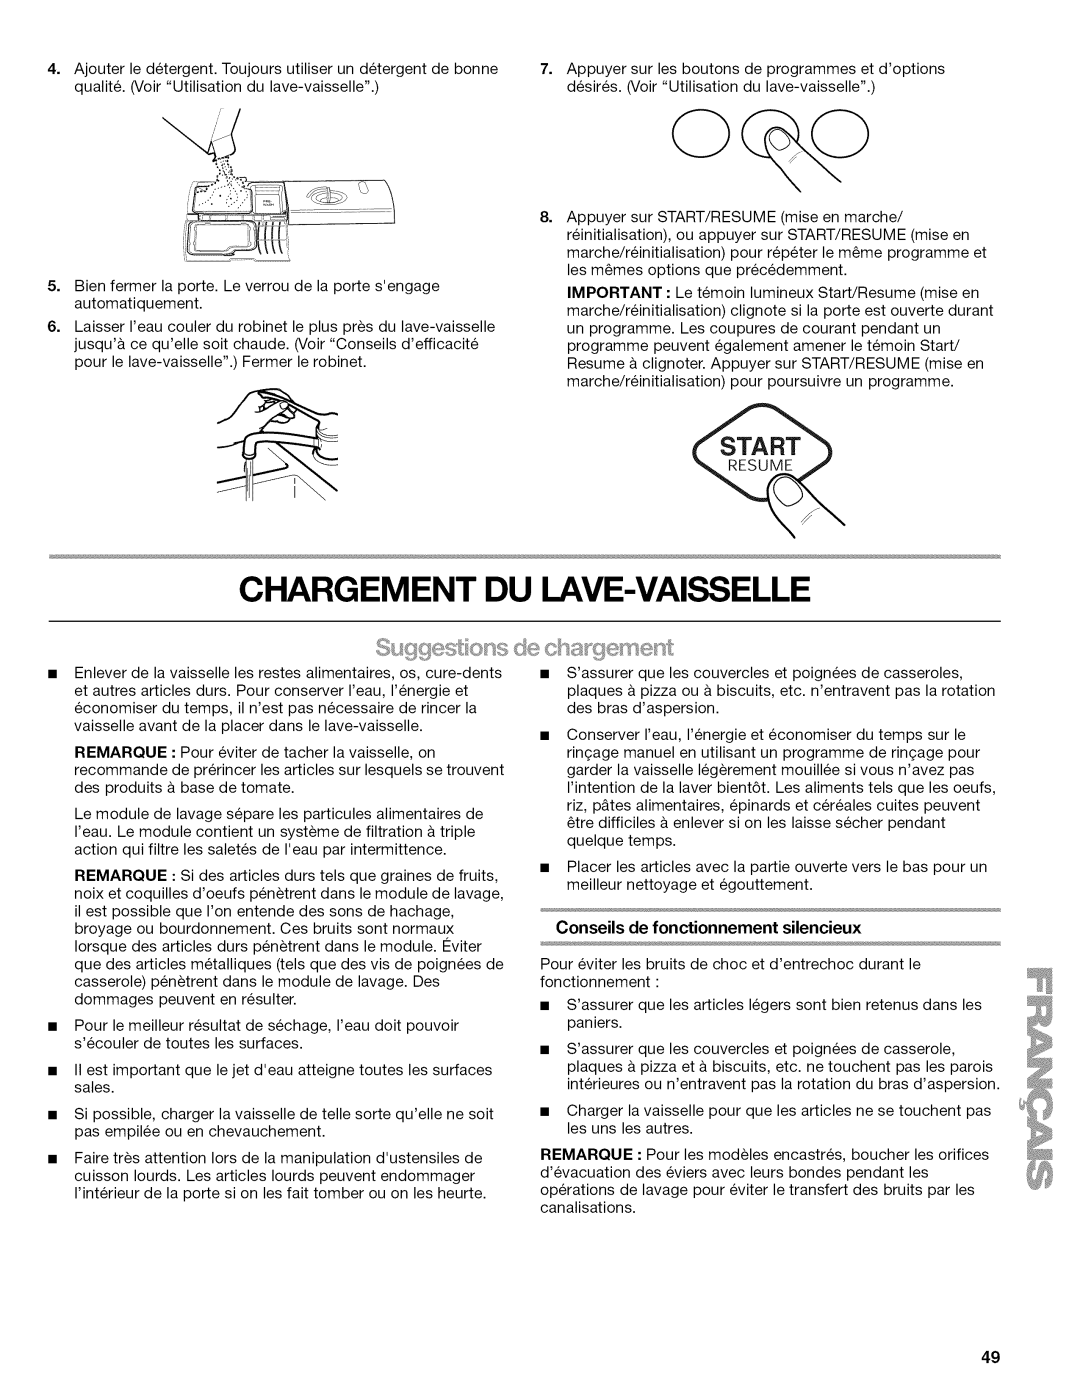 Kenmore 665.1622 manual Chargement Du Lave-Vaisselle, Conseils de fonctionnement silencieux 